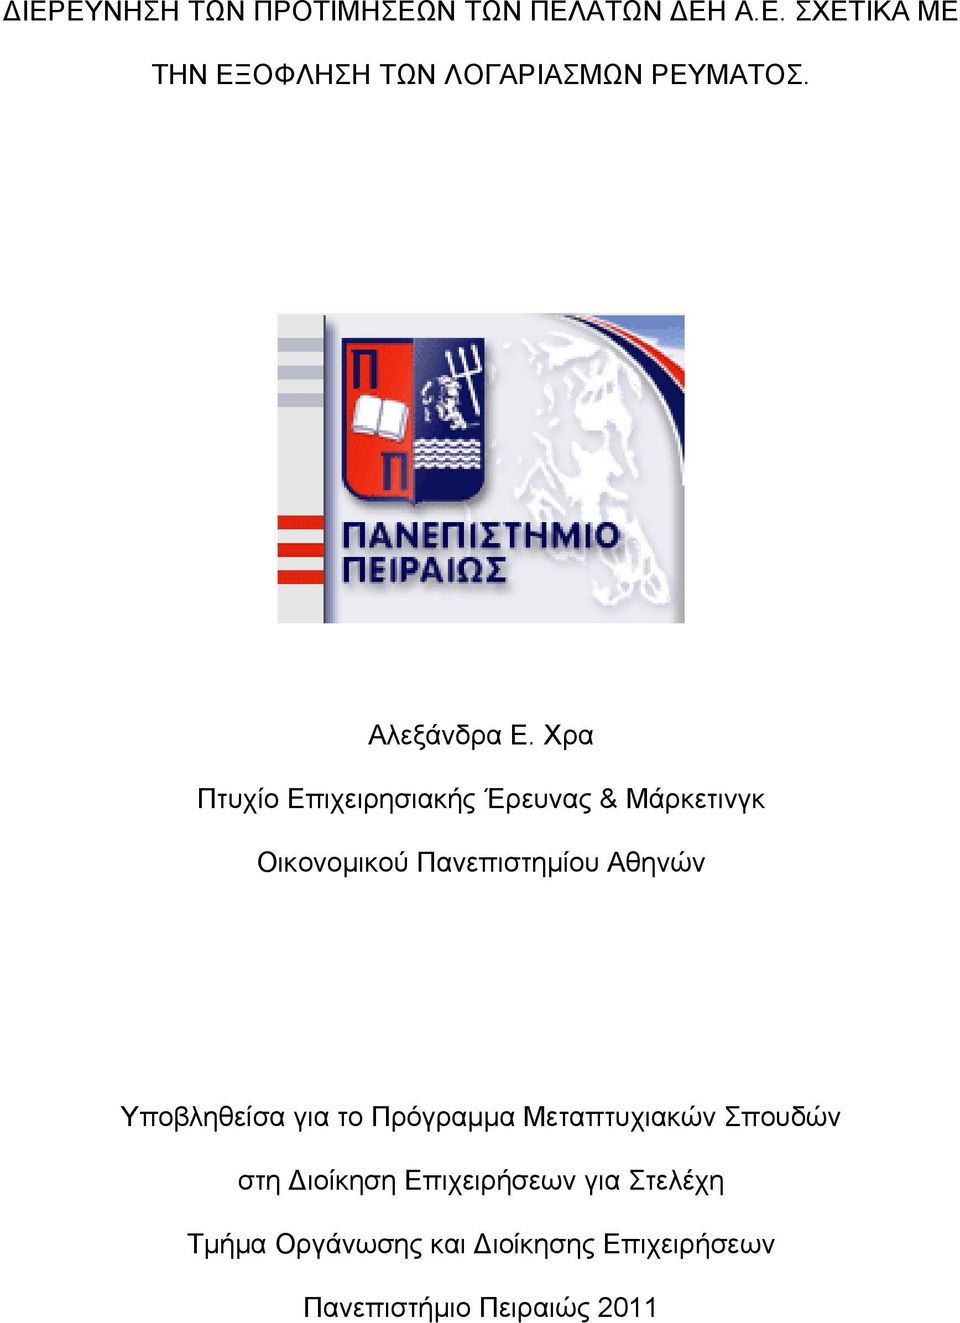 Χρα Πτυχίο Επιχειρησιακής Έρευνας & Μάρκετινγκ Οικονομικού Πανεπιστημίου Αθηνών